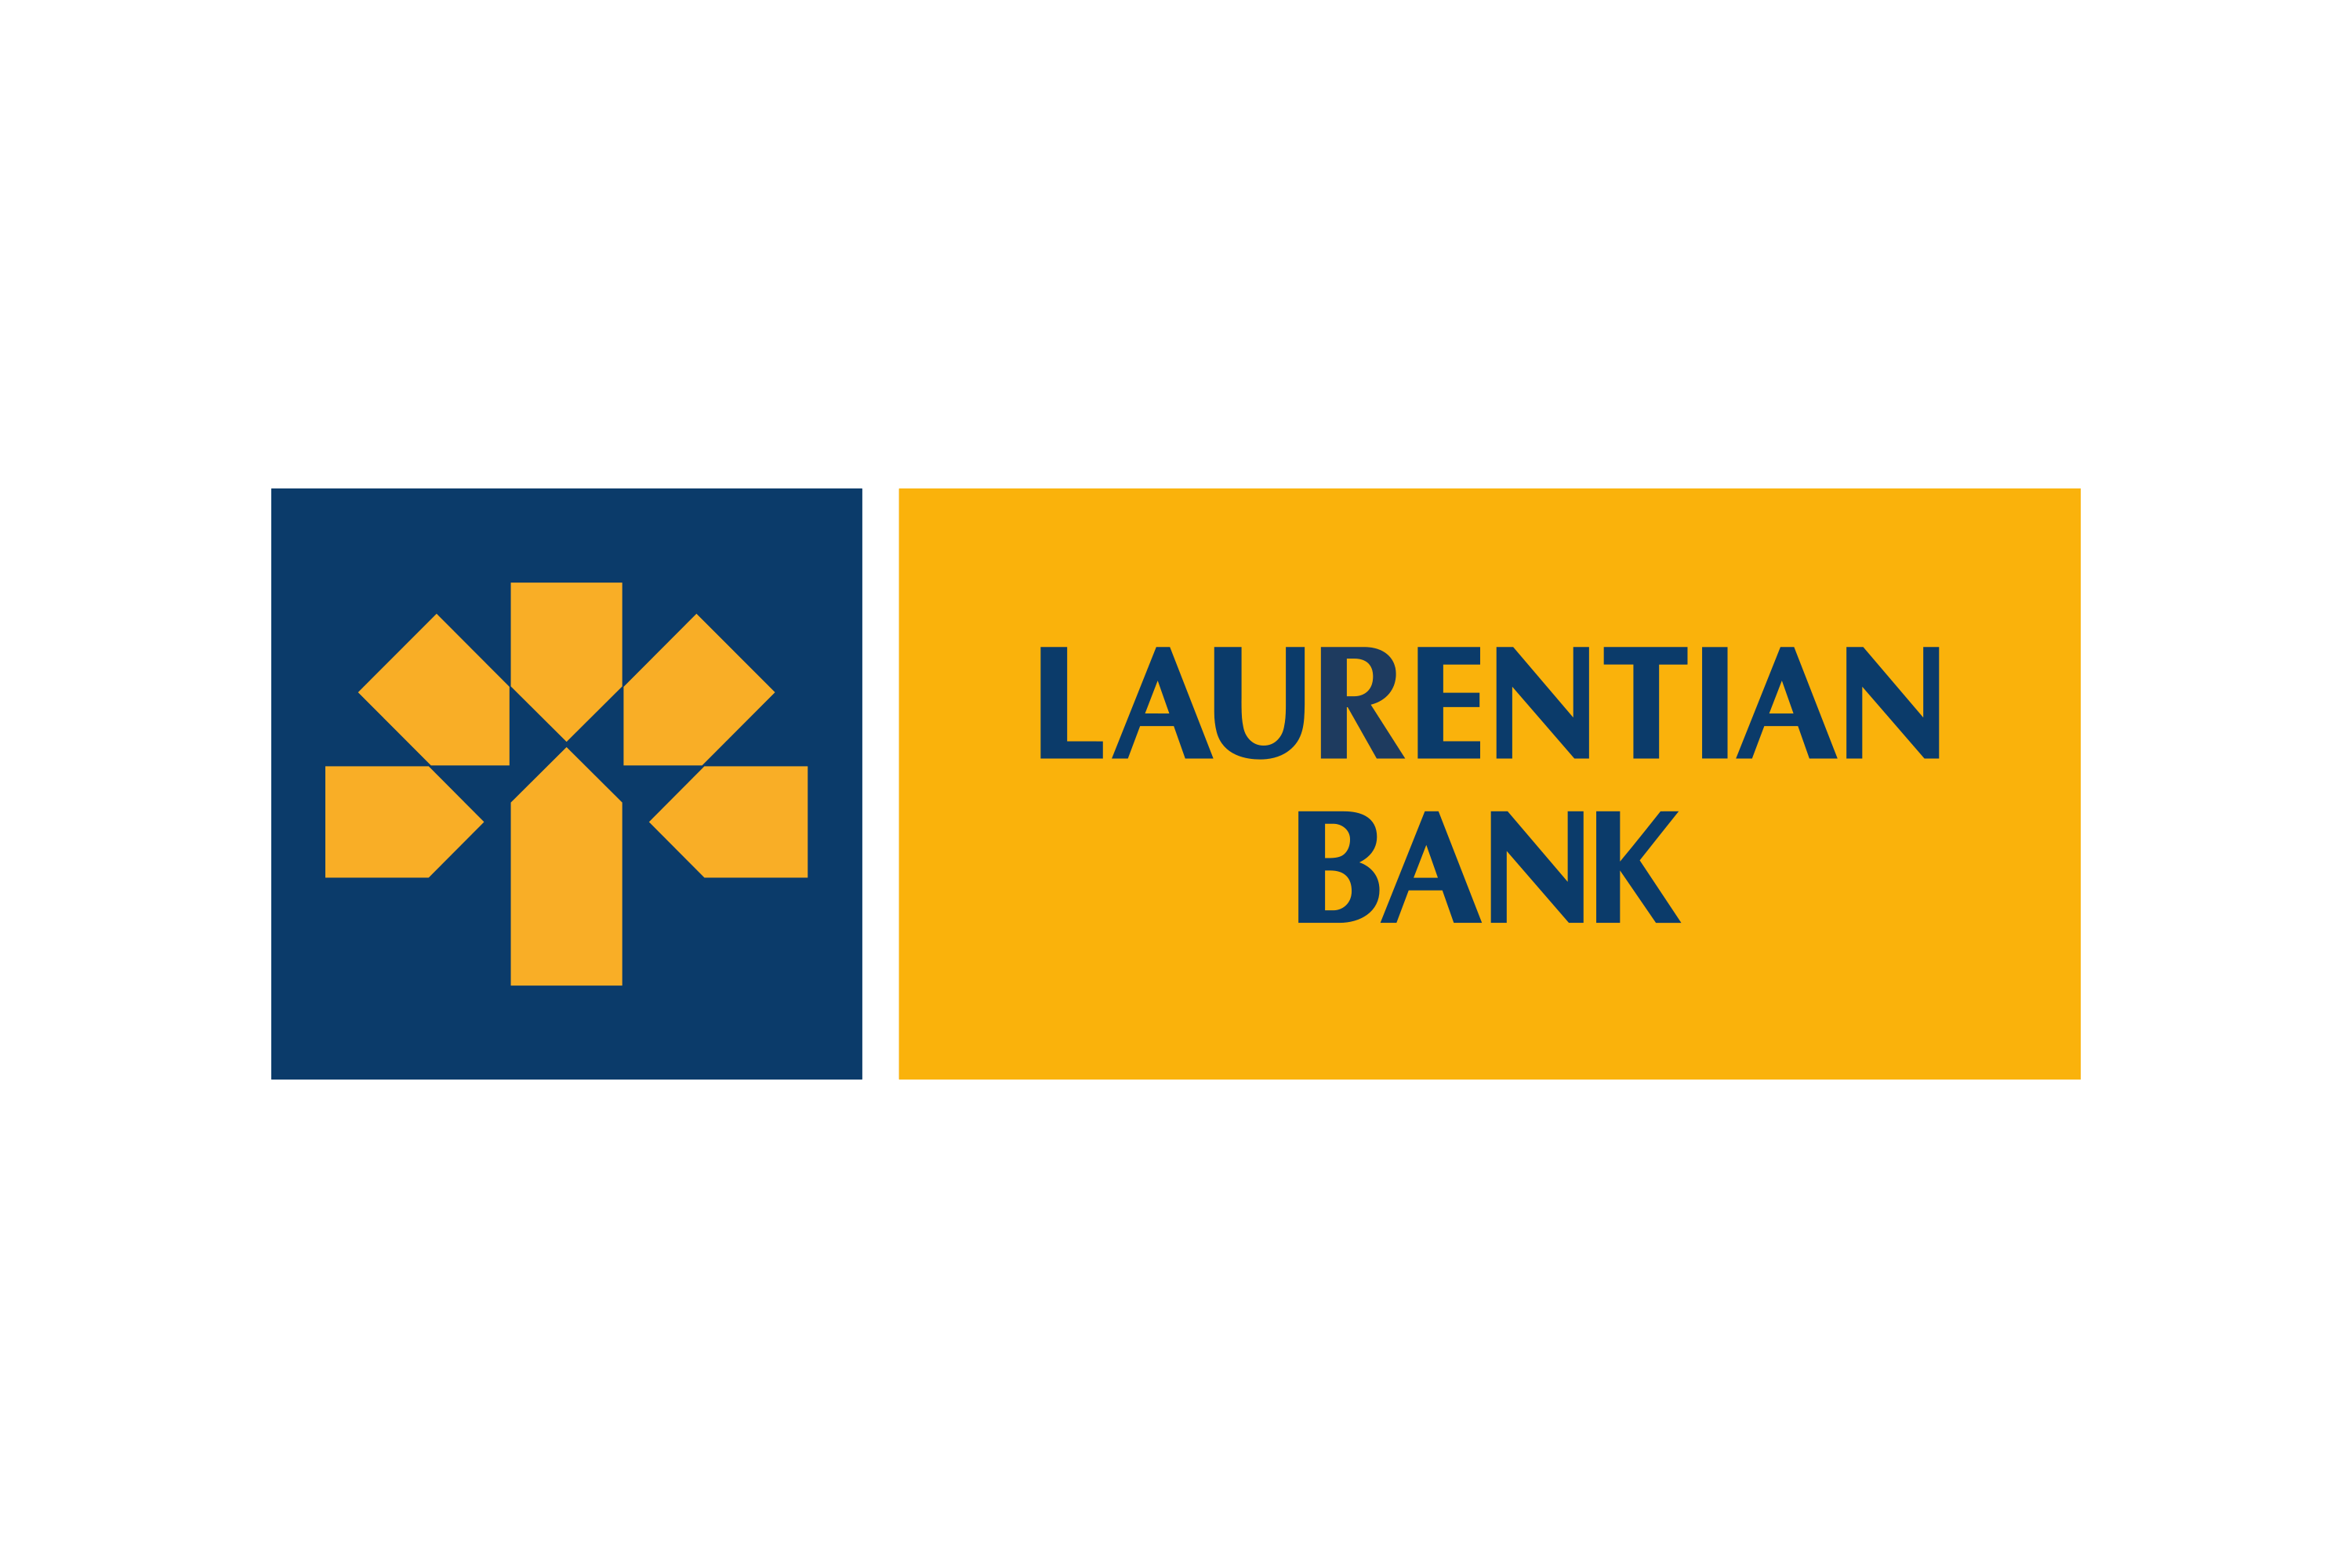 Laurentian bank logo